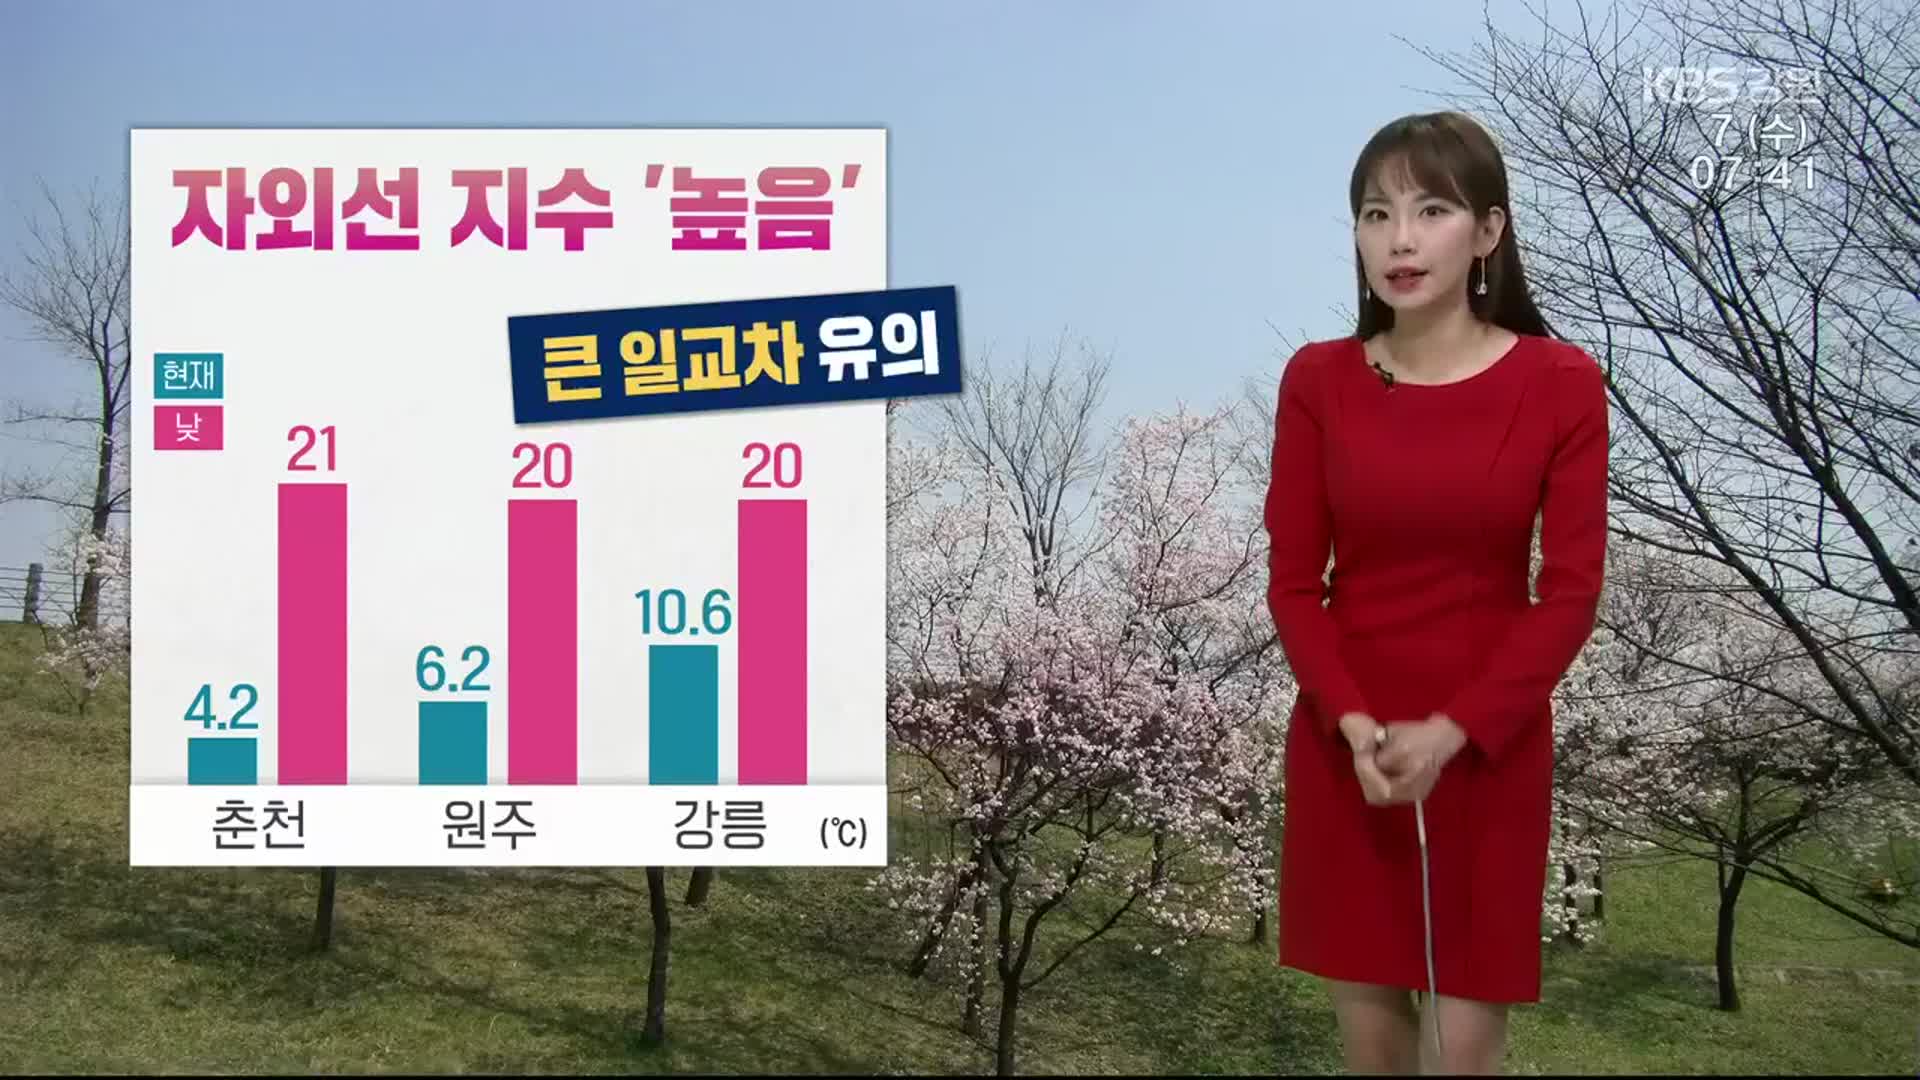 [날씨] 춘천 큰 일교차 유의…최저 4.2도, 최고 21도